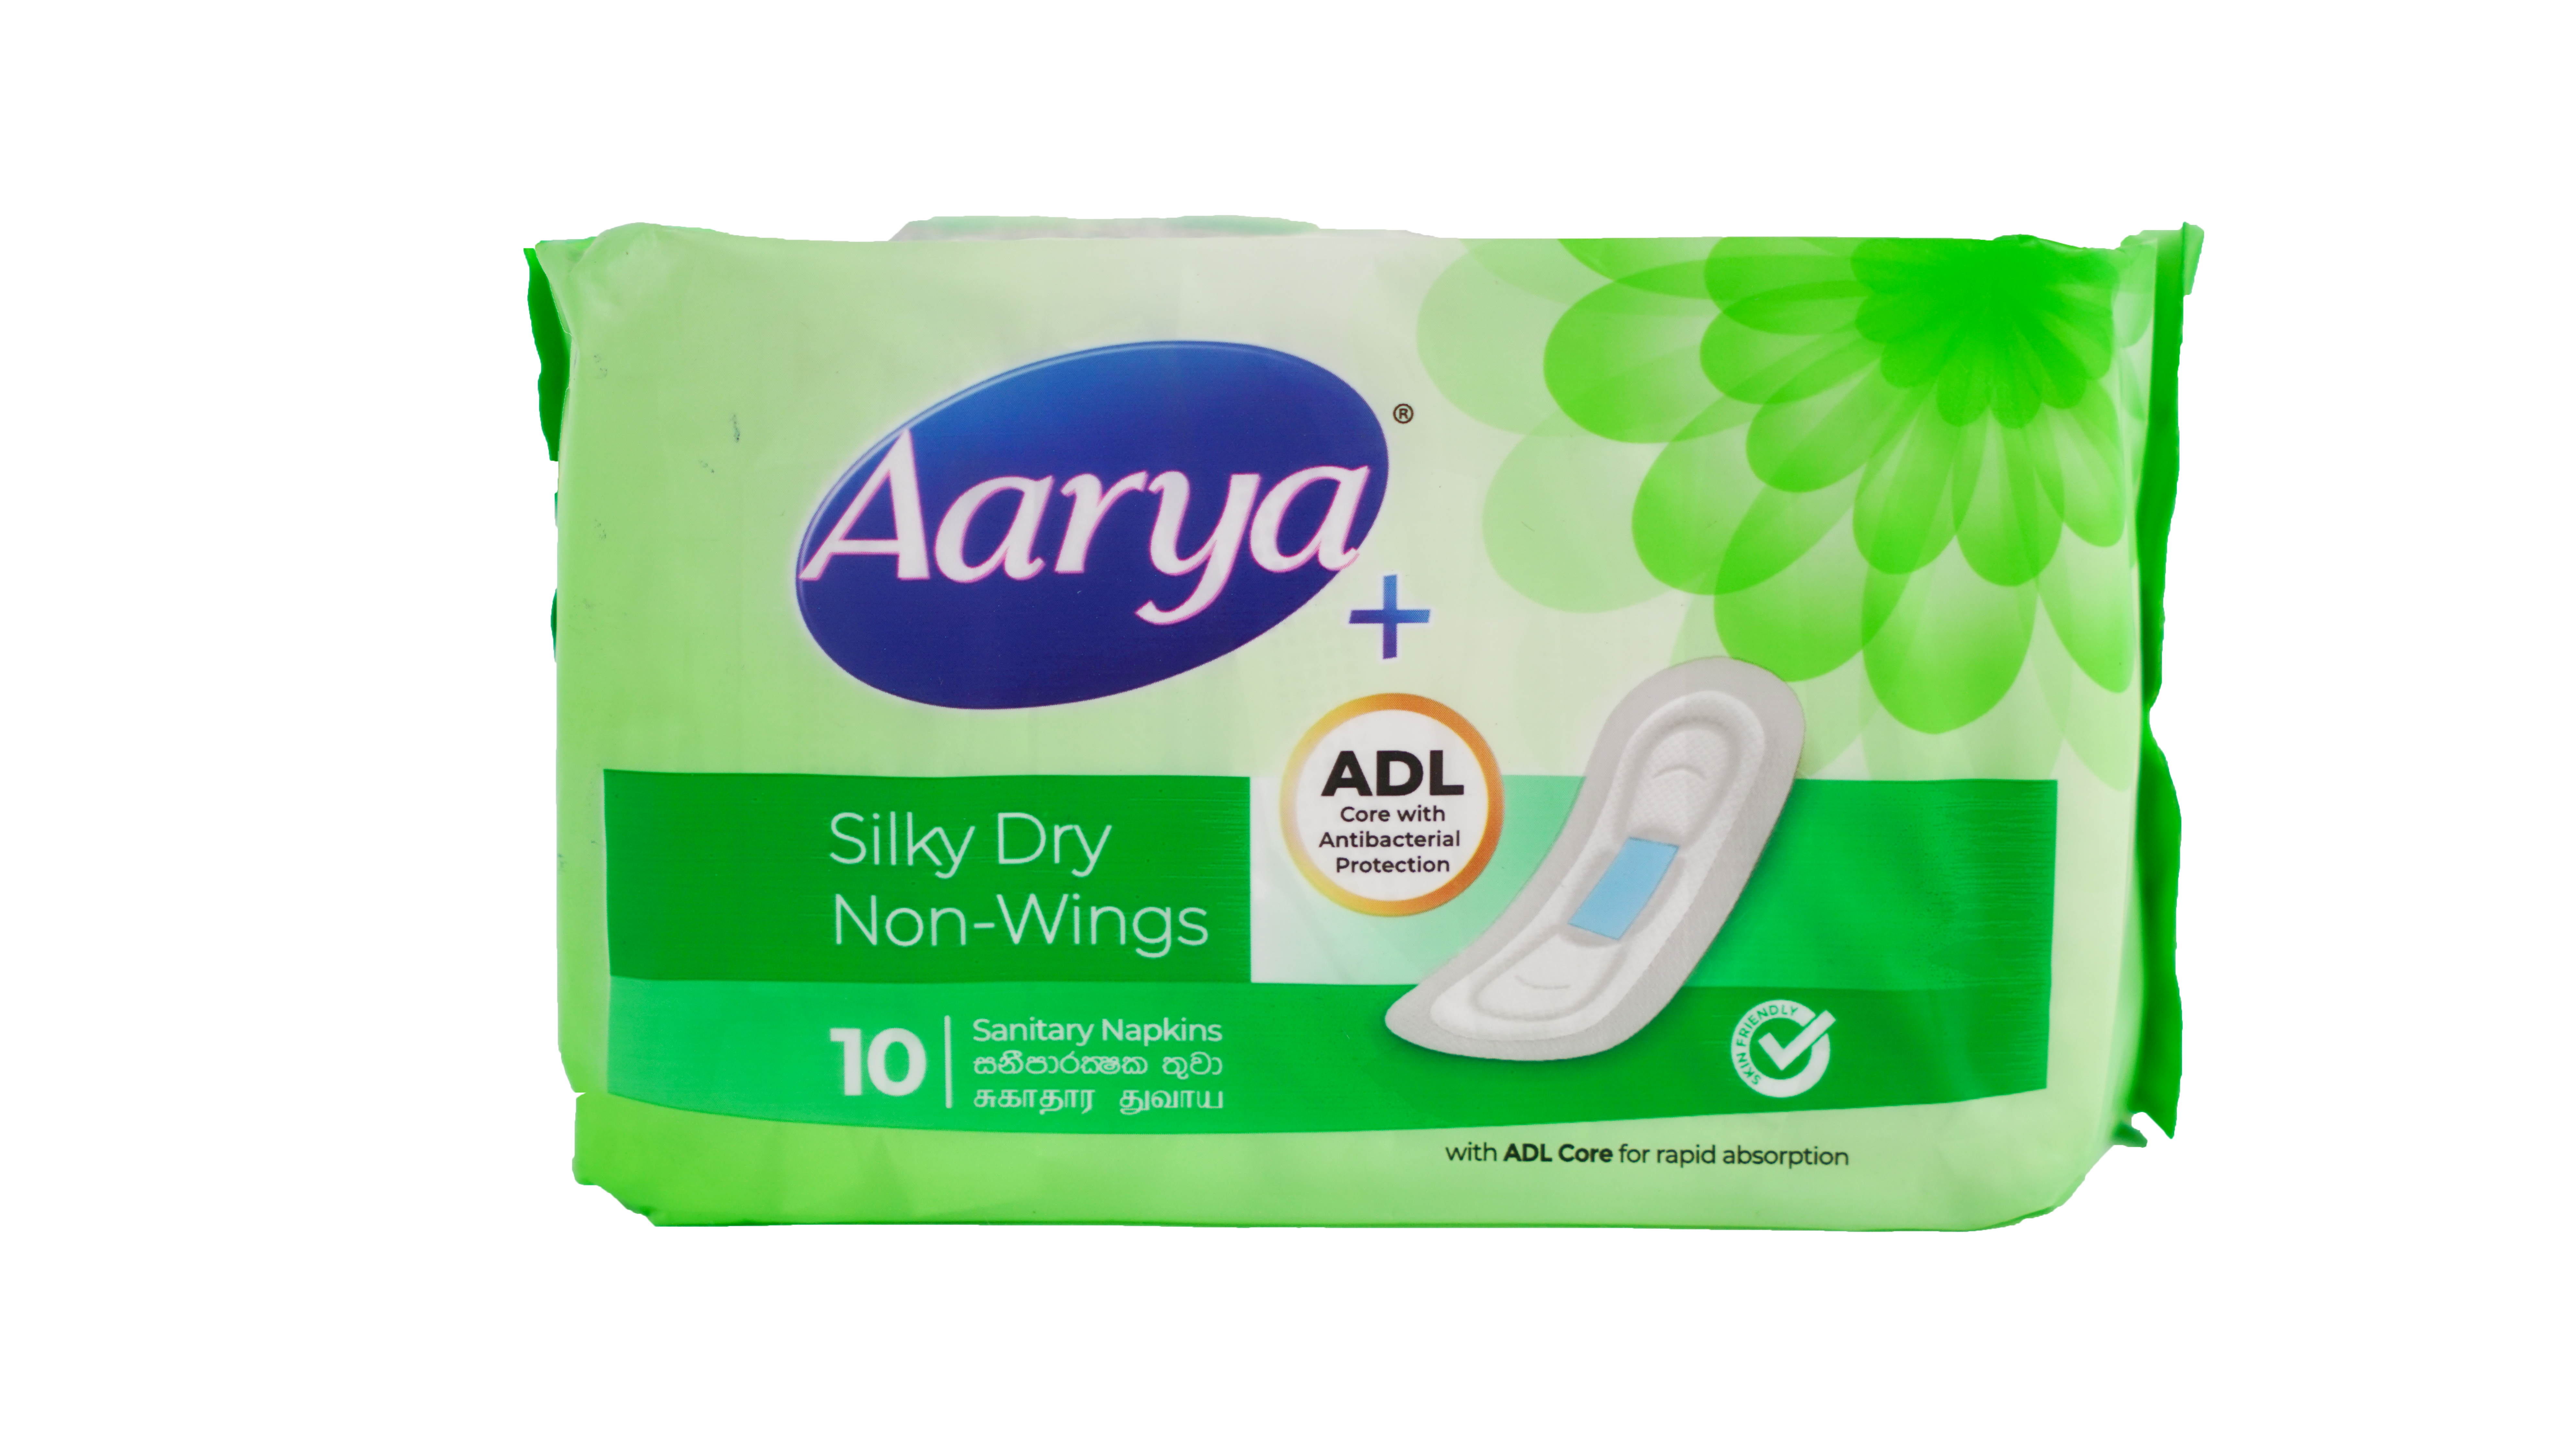 aarya Silky Dry Non Wings